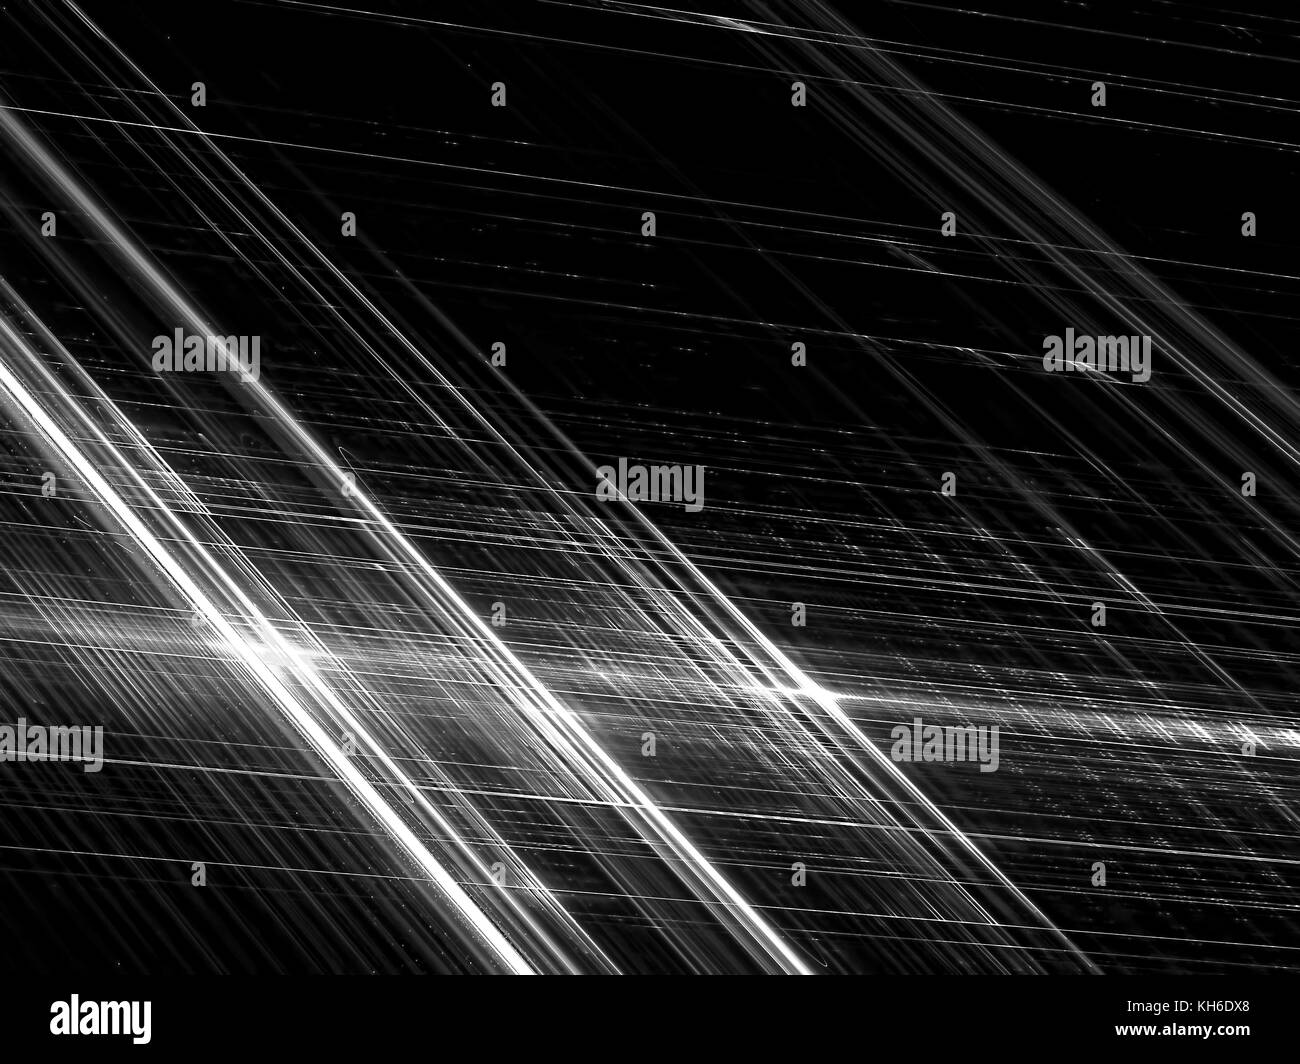 Rayures brillantes diagonal - abstract image générée numériquement Banque D'Images